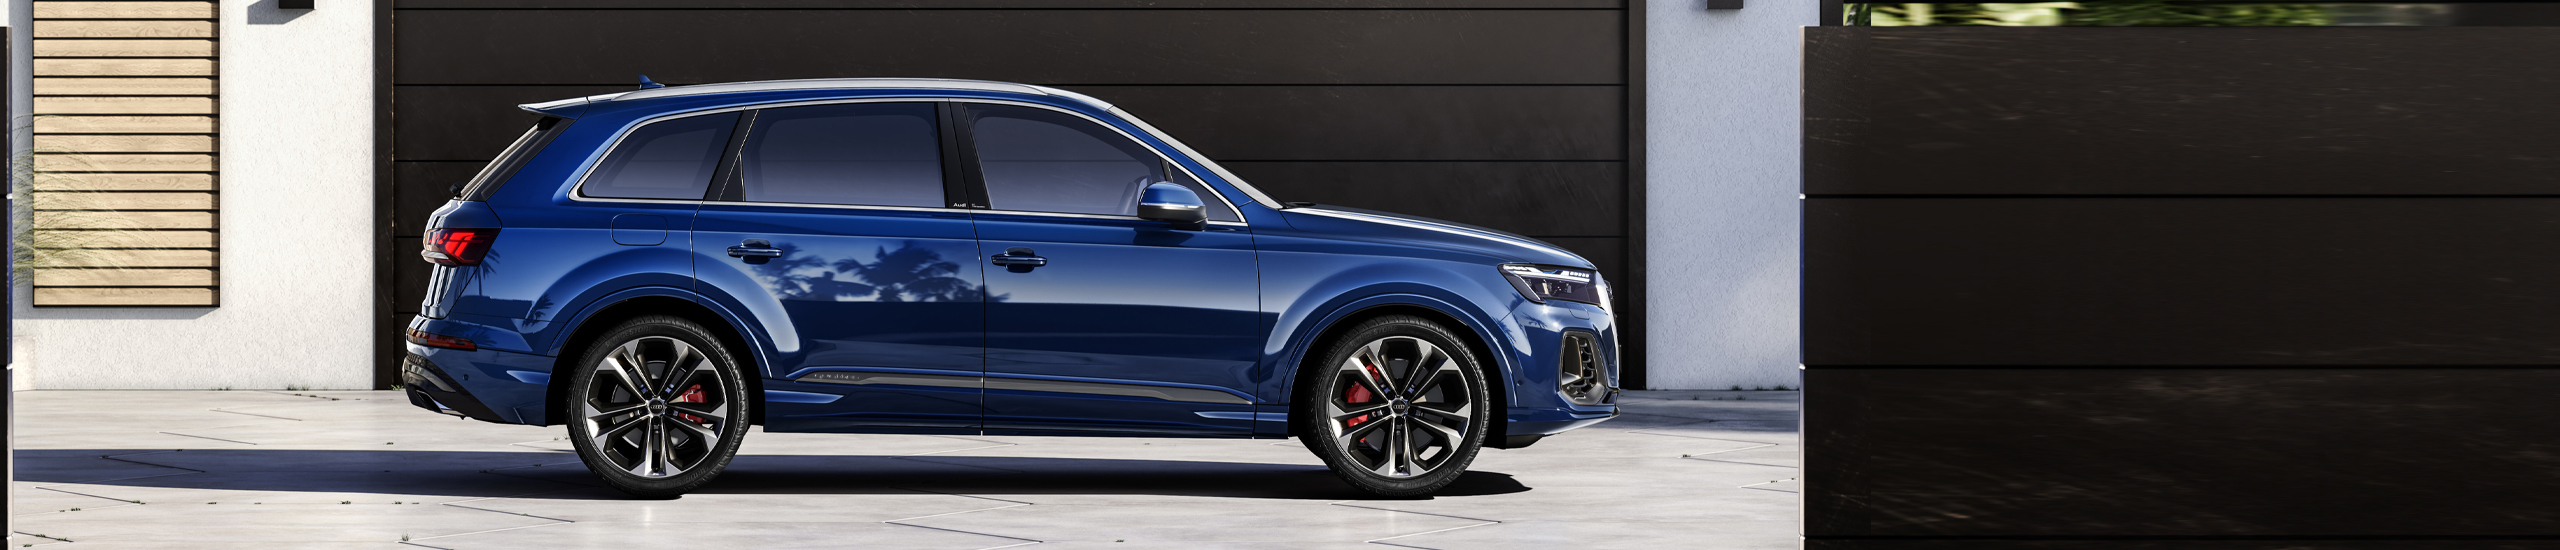 De sterk vernieuwde Audi Q7 is een karaktervolle verschijning en synoniem voor zelfverzekerdheid op de weg. 